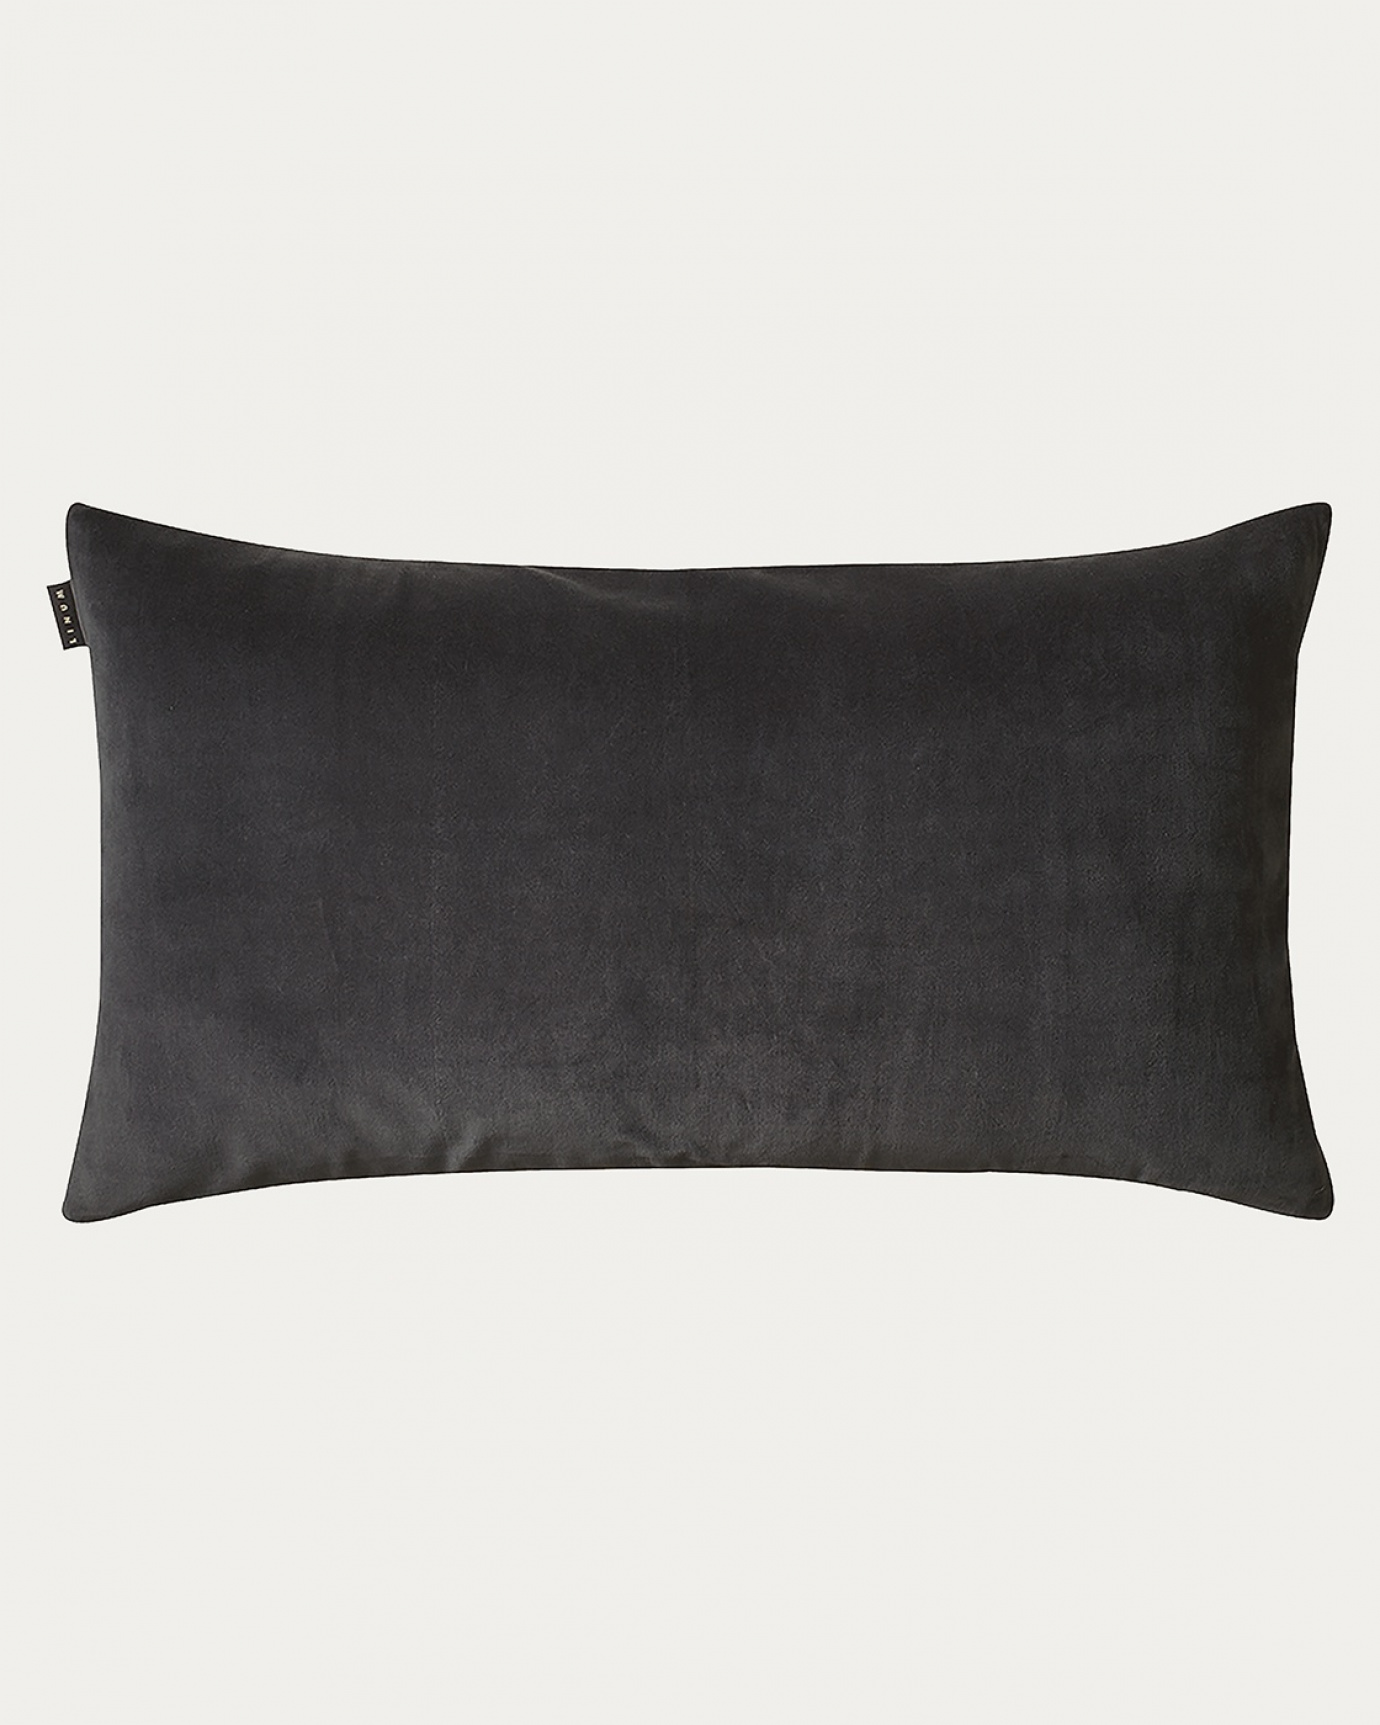 Produktbild dunkles anthrazitgrau PAOLO Kissenhülle aus weichem Baumwollsamt und 100% Leinen von LINUM DESIGN. Größe 50x90 cm.